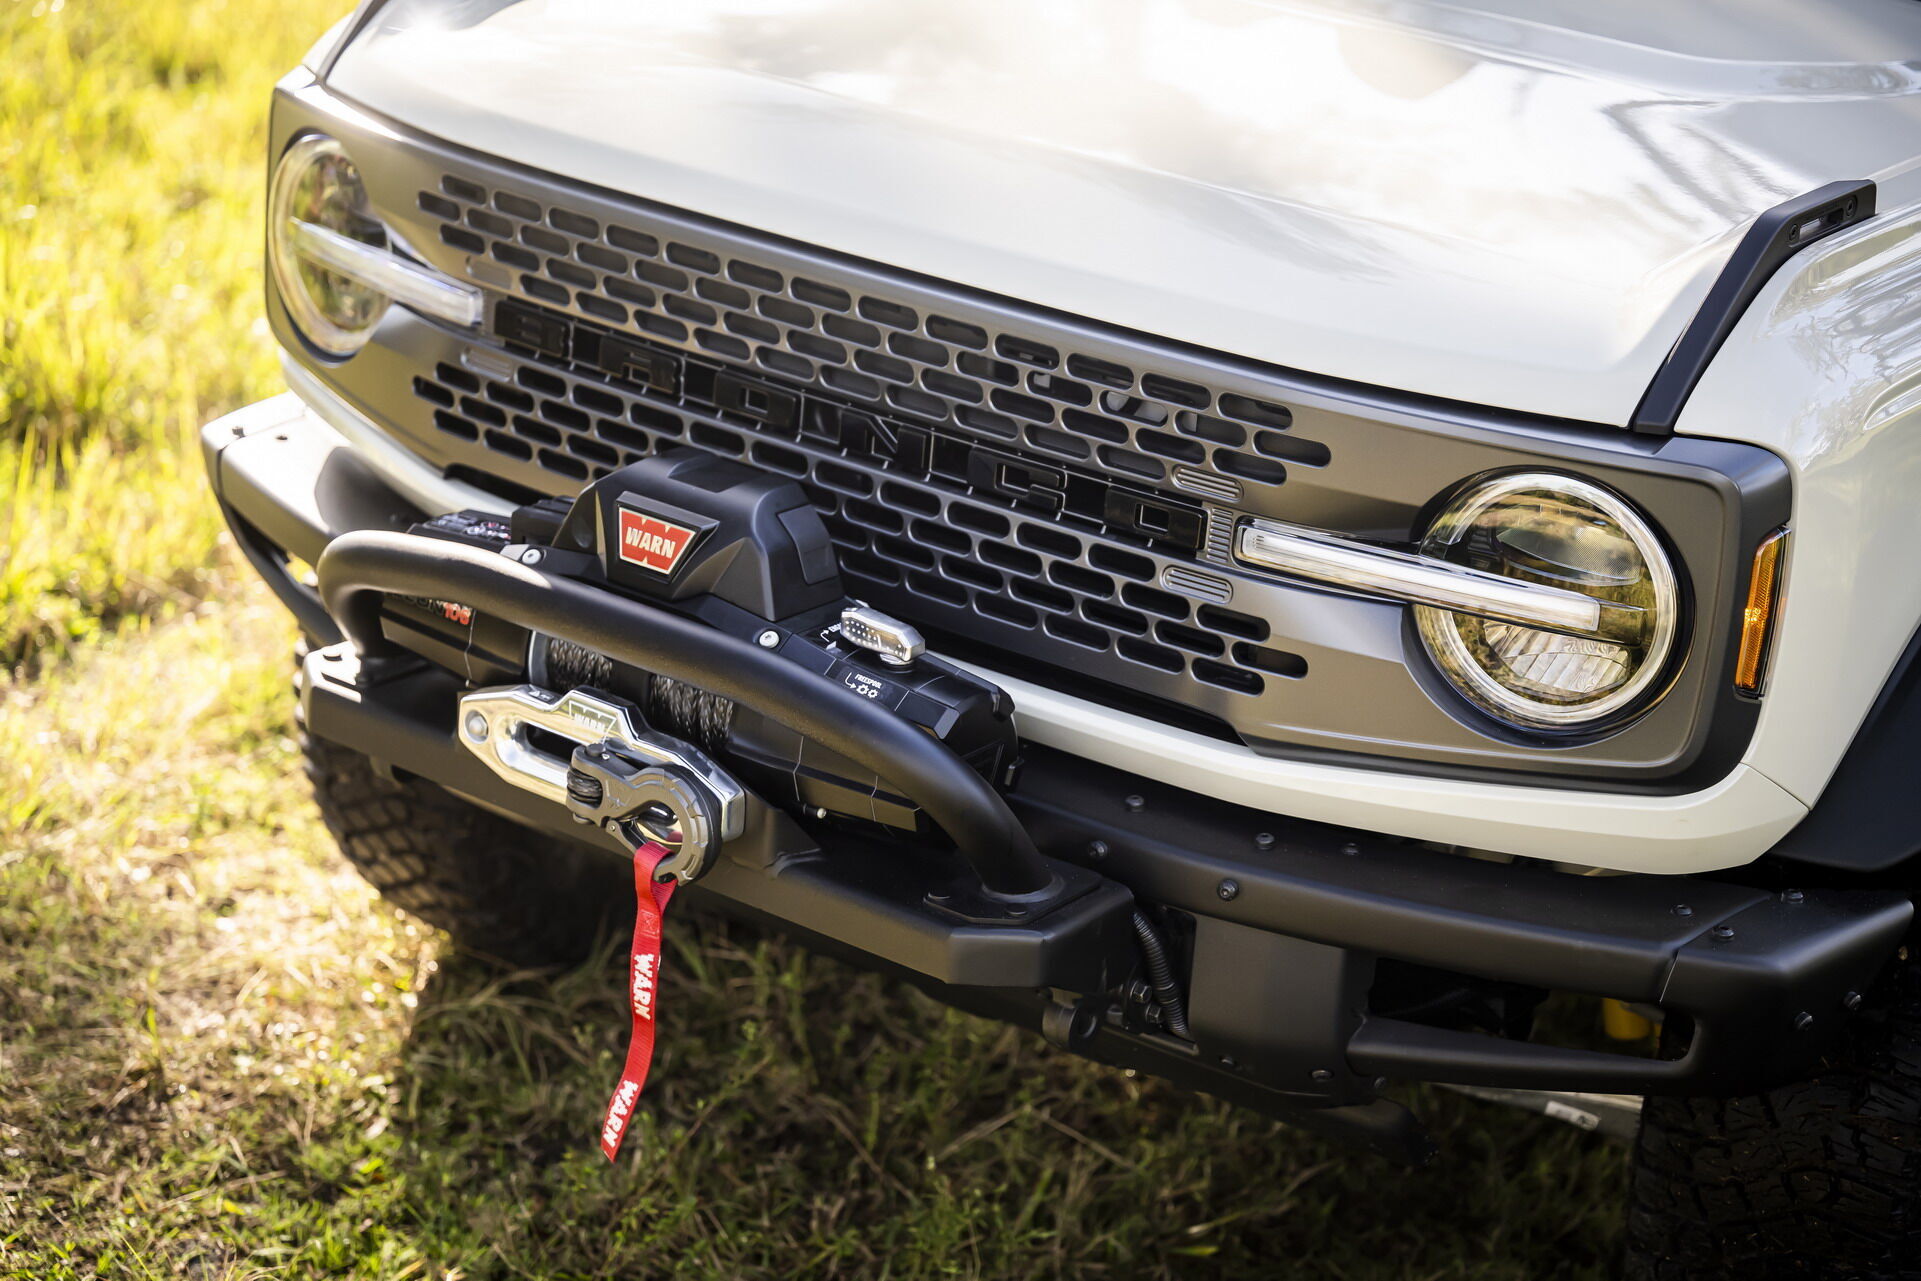 Everglades получил составной передний бампер от Ford Performance и лебедку Warn Zeon 10-S с тяговым усилием 4536 кг